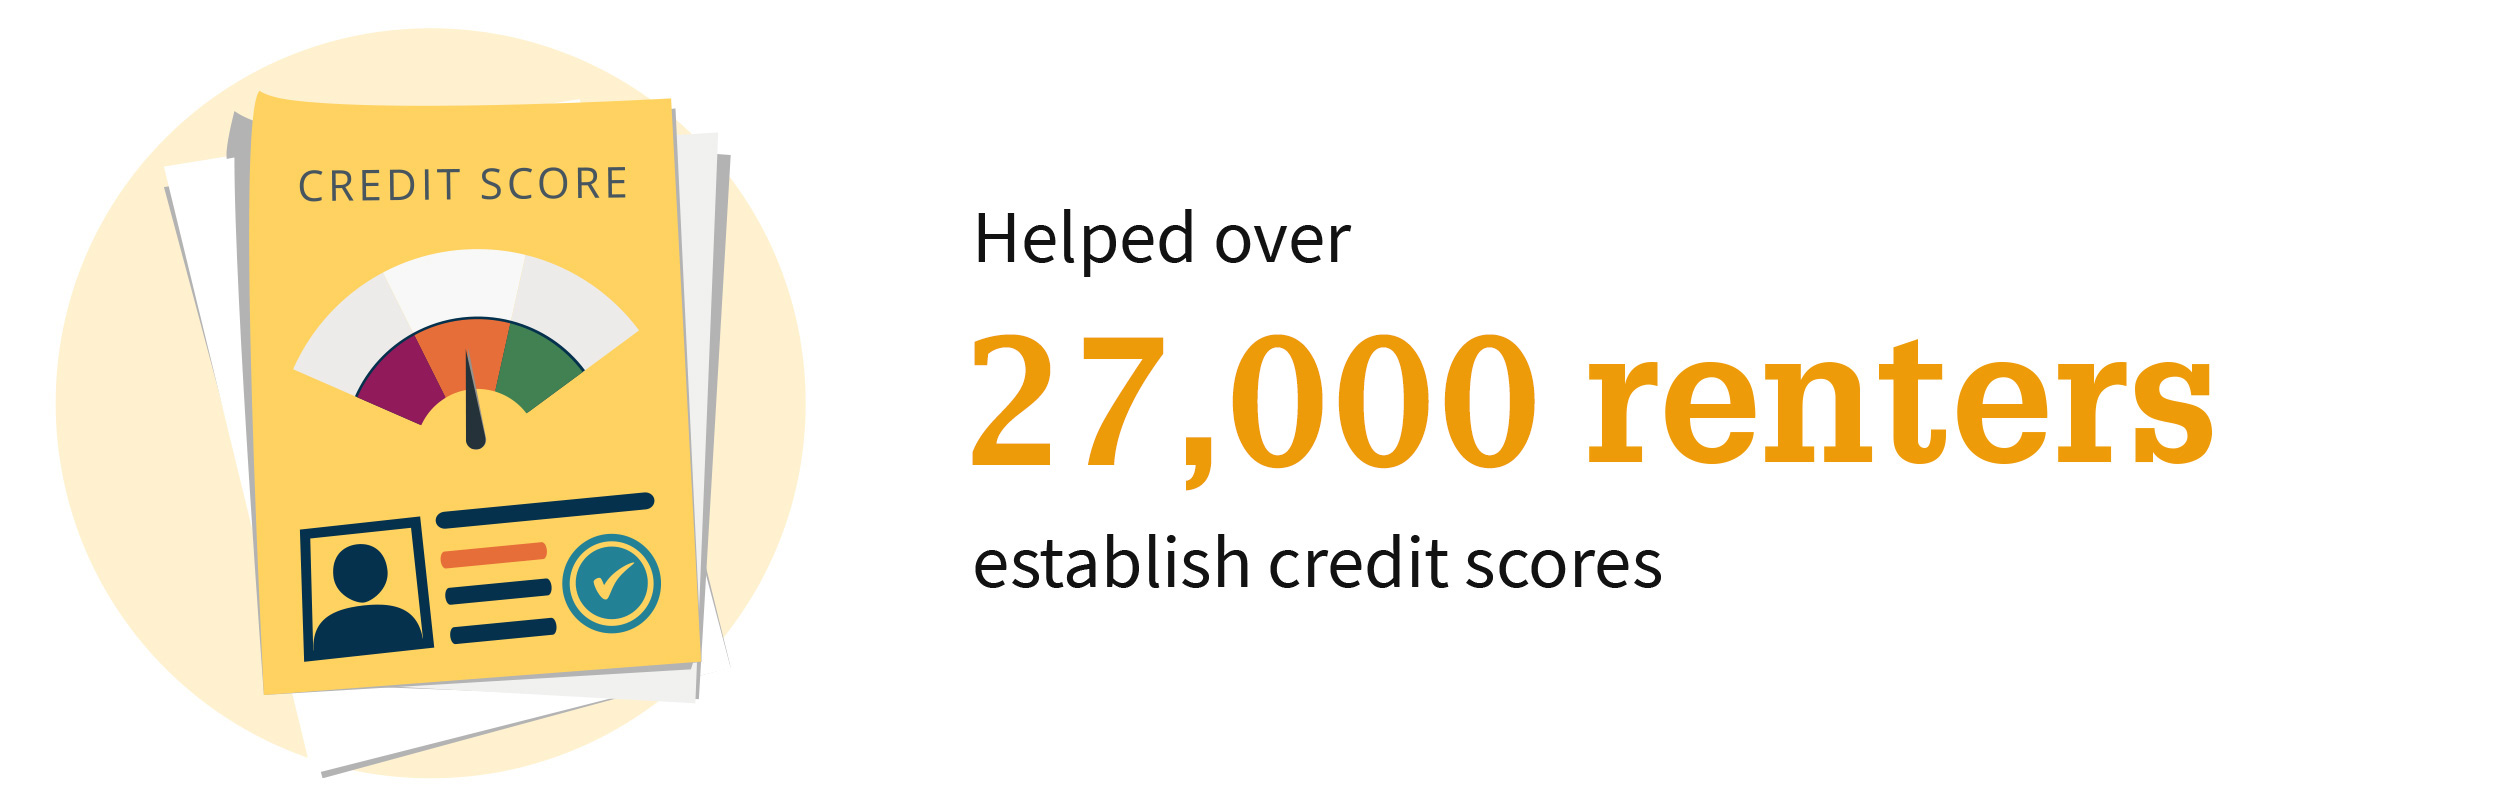 Helped over 27,000 renters establish credit scores